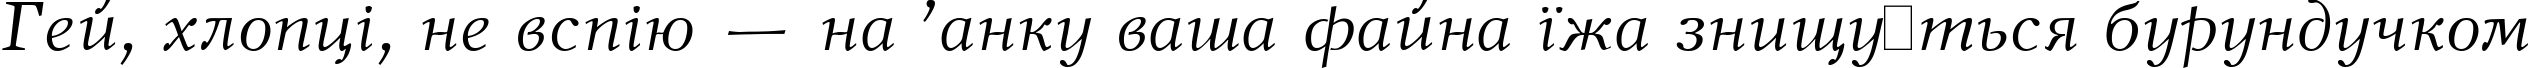 Пример написания шрифтом New Journal Italic:001.001 текста на украинском